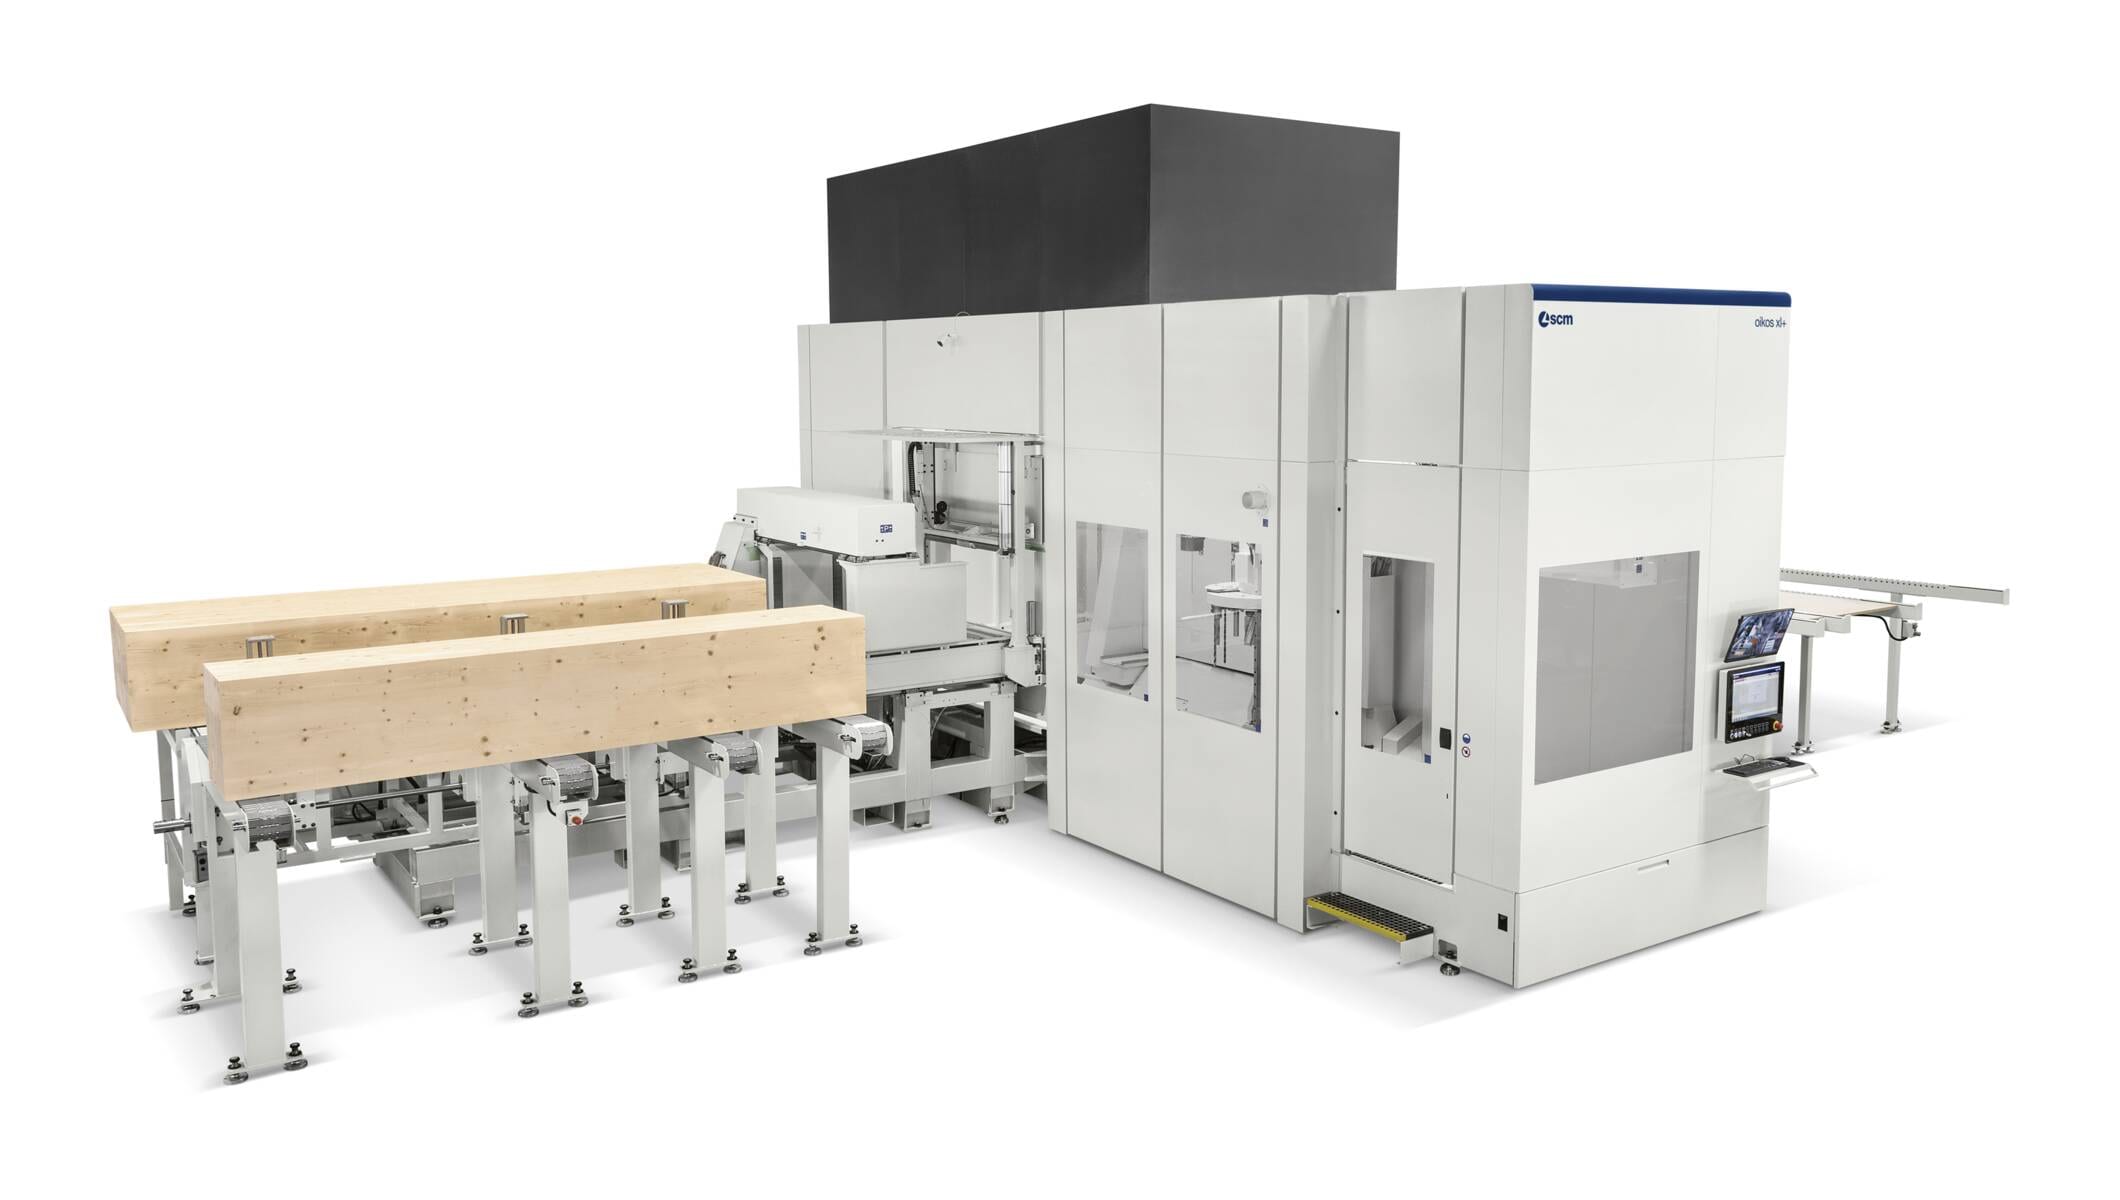 Systeme für den Holzbau - CNC-Abbundanlagen für den Holzbau - oikos xl+